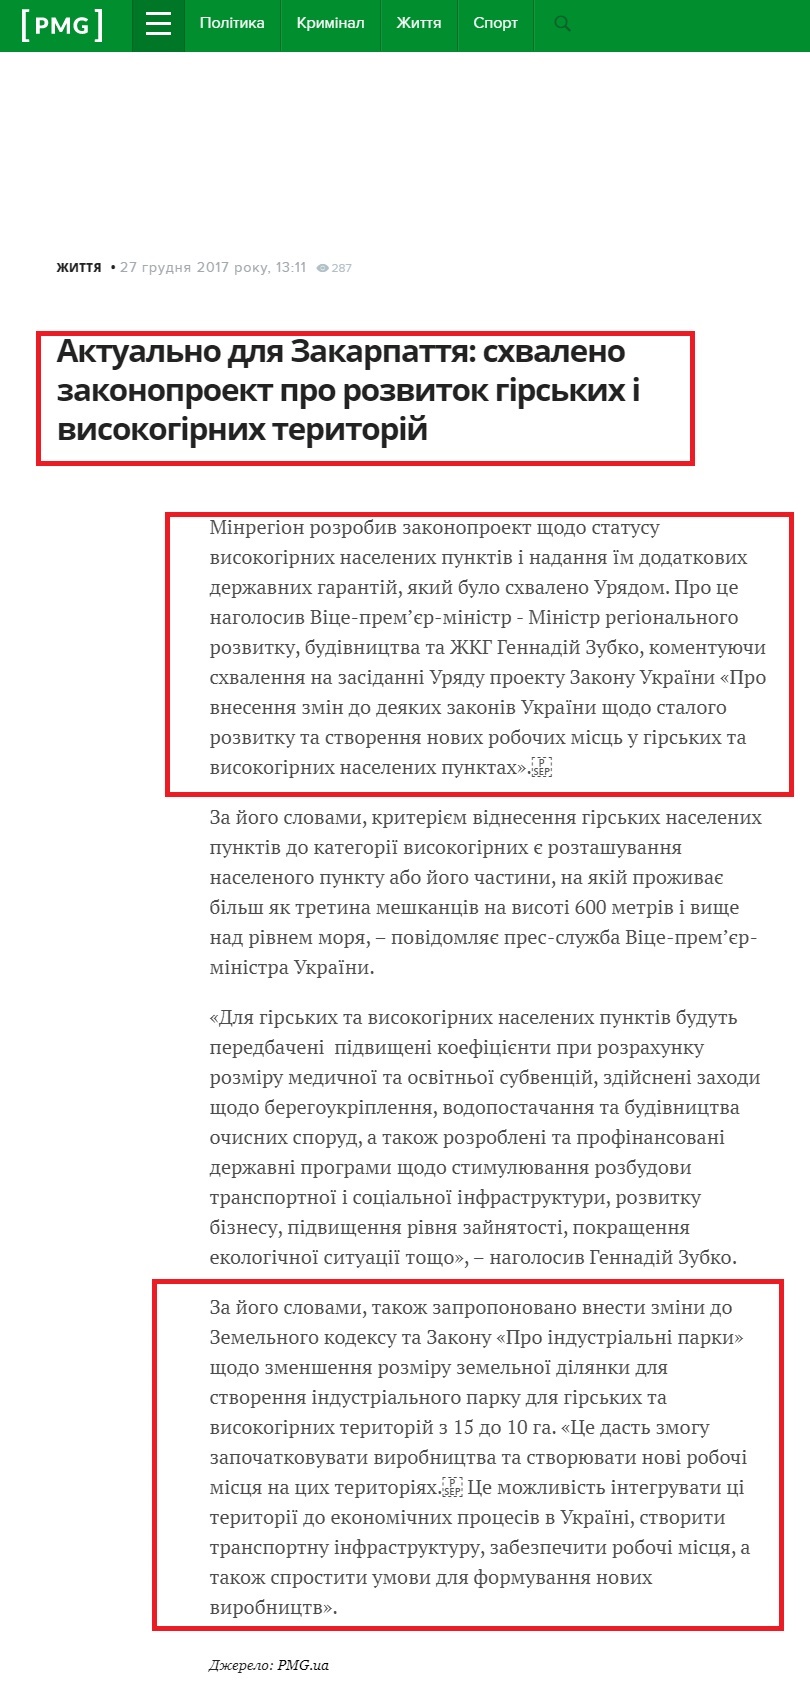 https://pmg.ua/life/66409-aktualno-dlya-zakarpattya-skhvaleno-zakonoproekt-pro-rozvytok-girskykh-i-vysokogirnykh-terytoriy